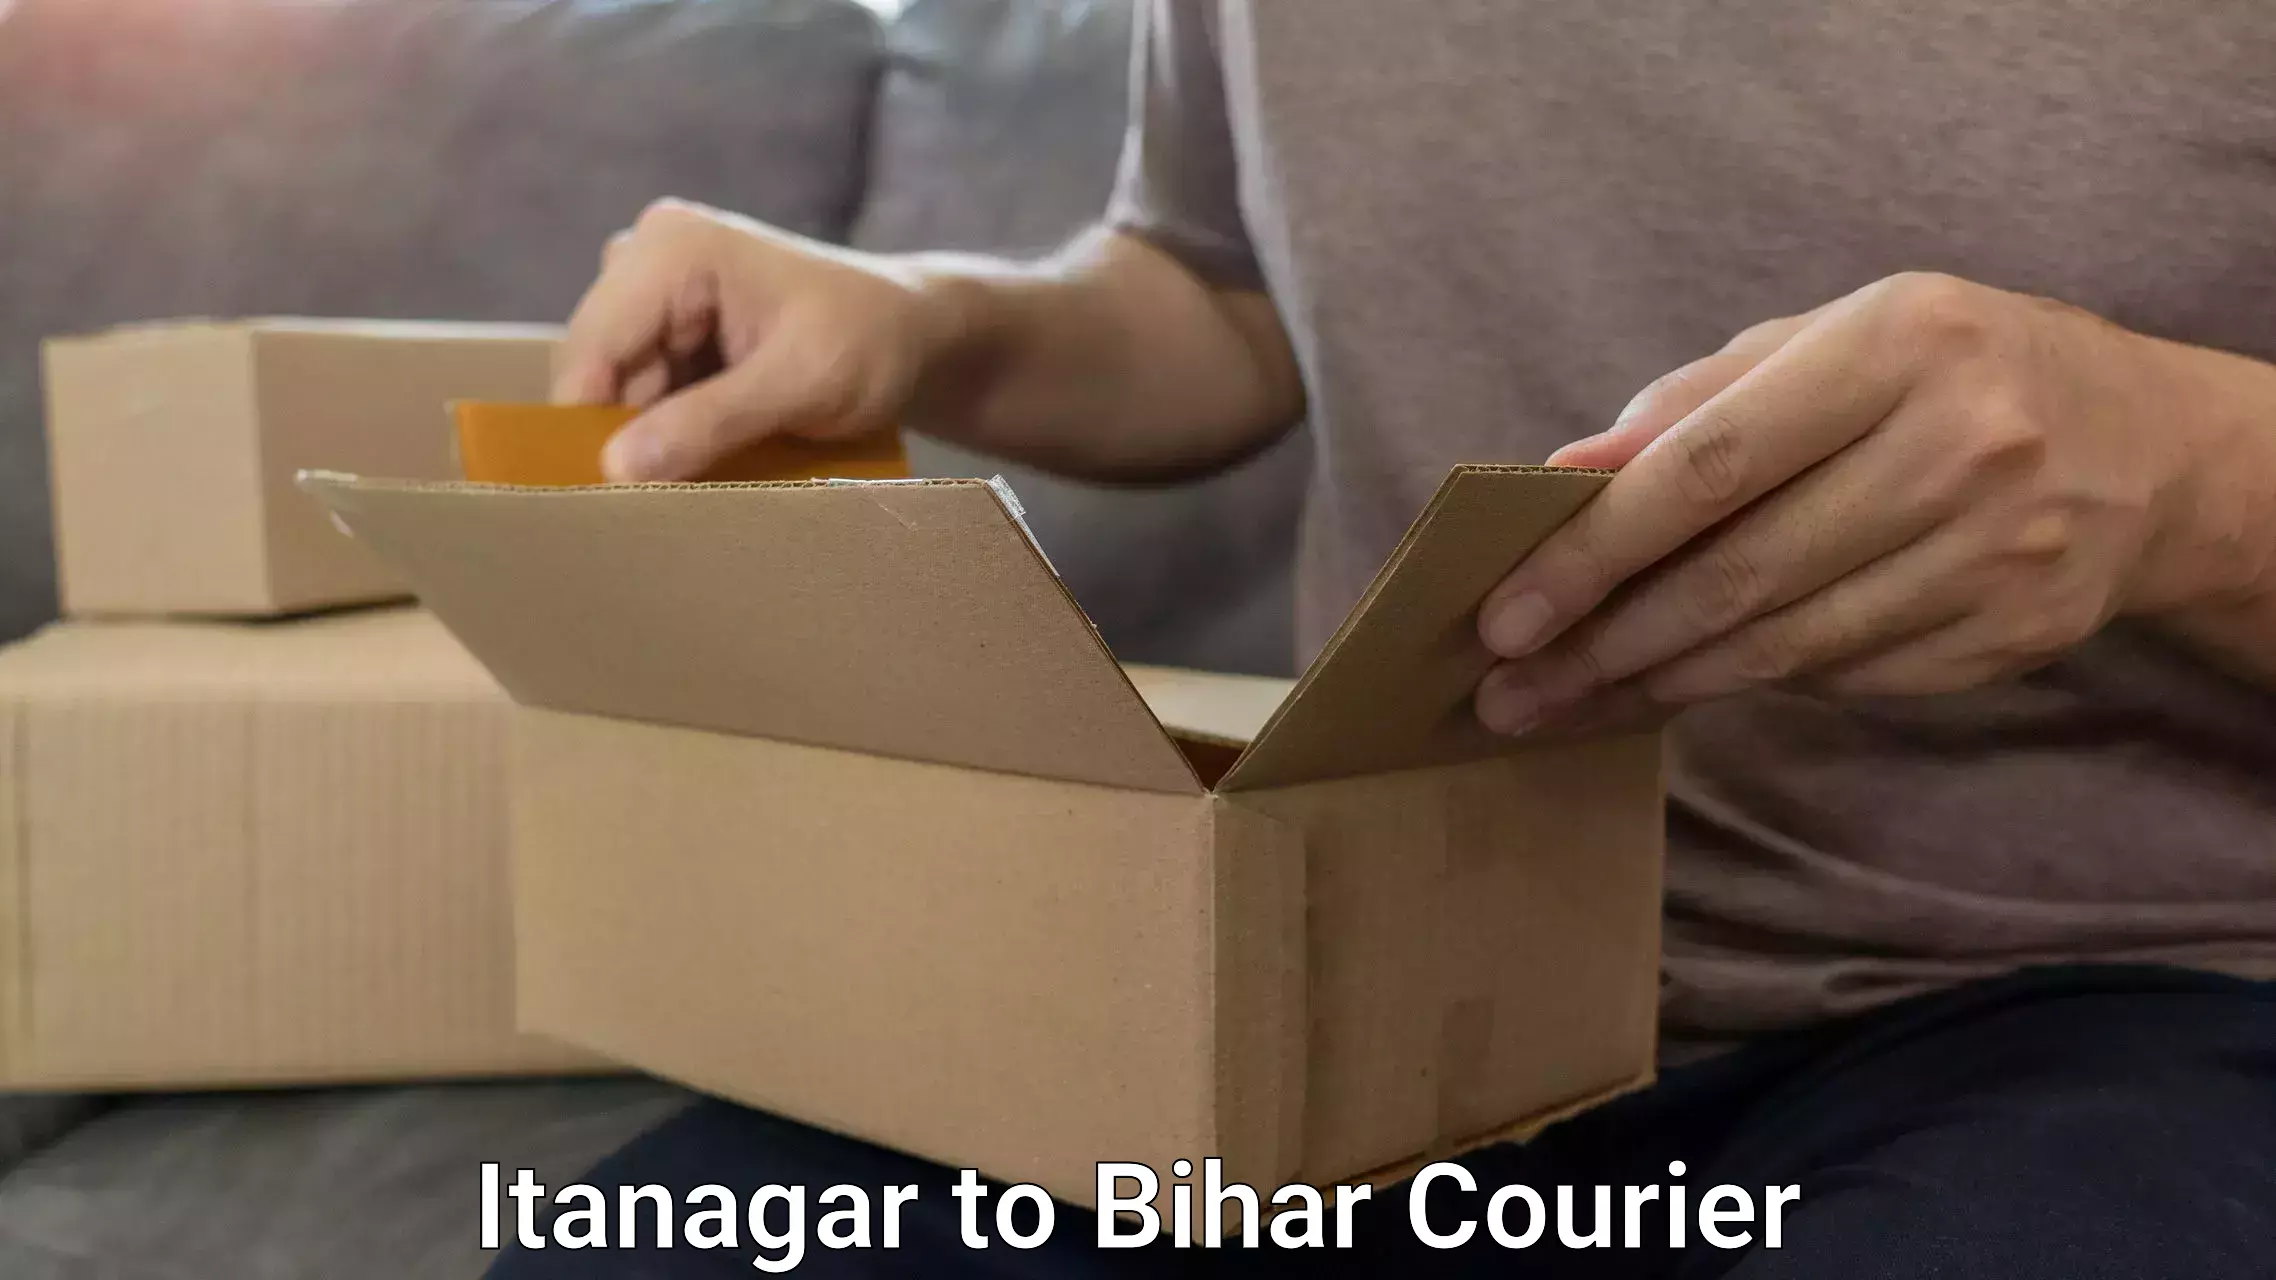 Urgent luggage shipment Itanagar to Ghanshyampur